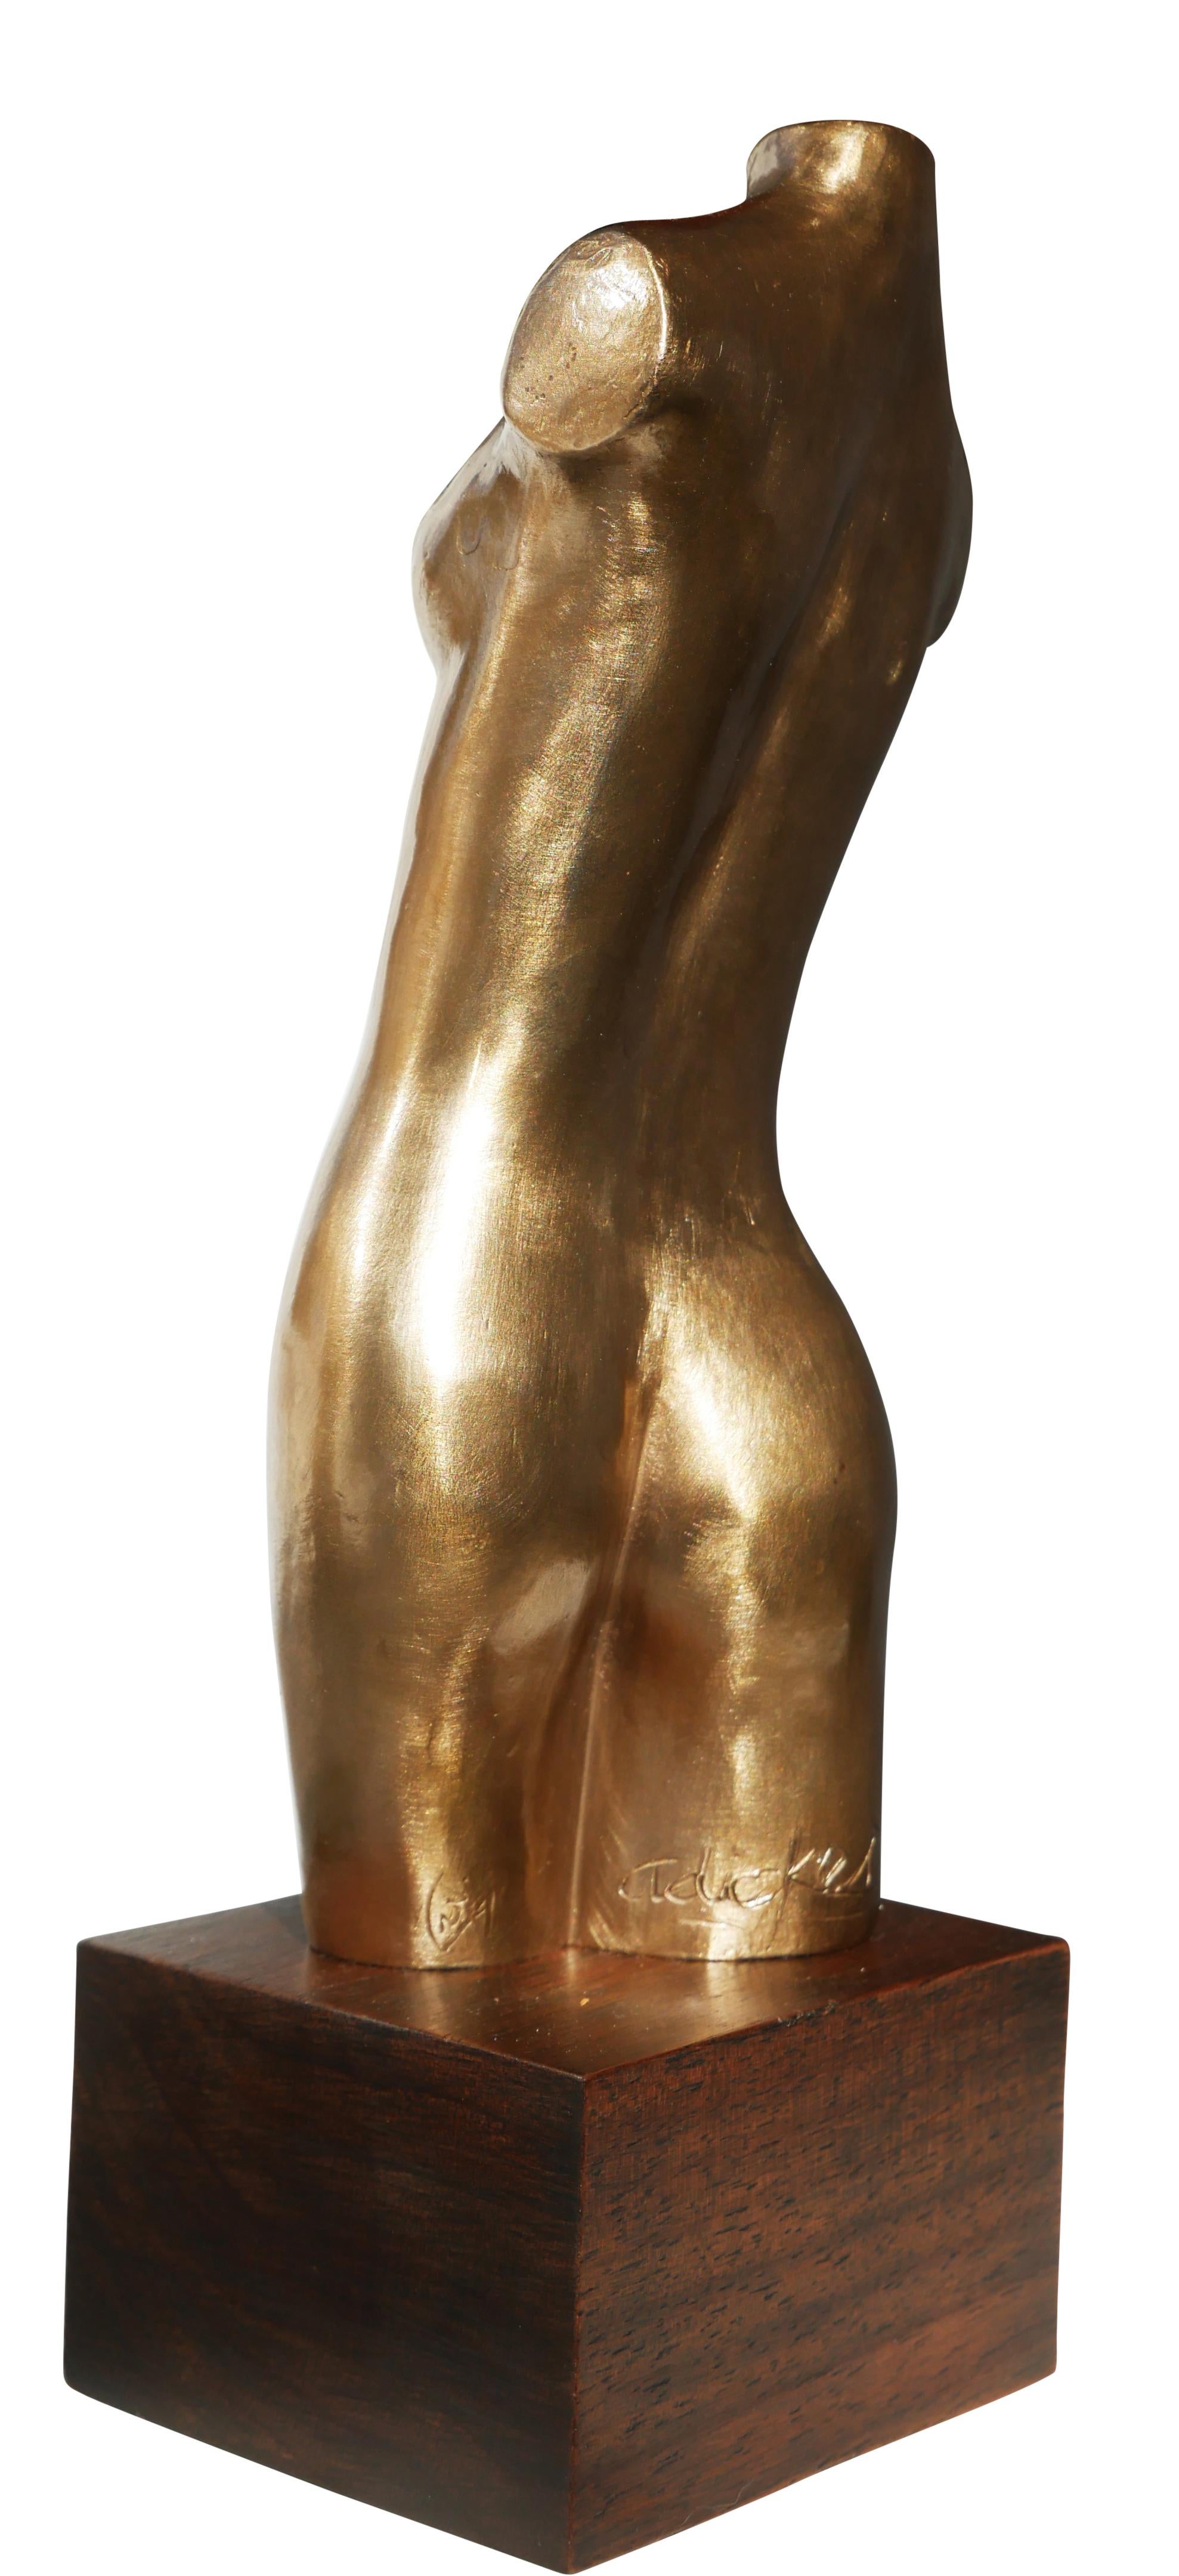 Sculpture de bronze moderniste représentant un nu, réalisée par l'artiste David Adickes, de Houston, au Texas. La sculpture représente un torse nu féminin abstrait sans bras qui repose sur une base en bois. La pièce est signée par l'artiste à